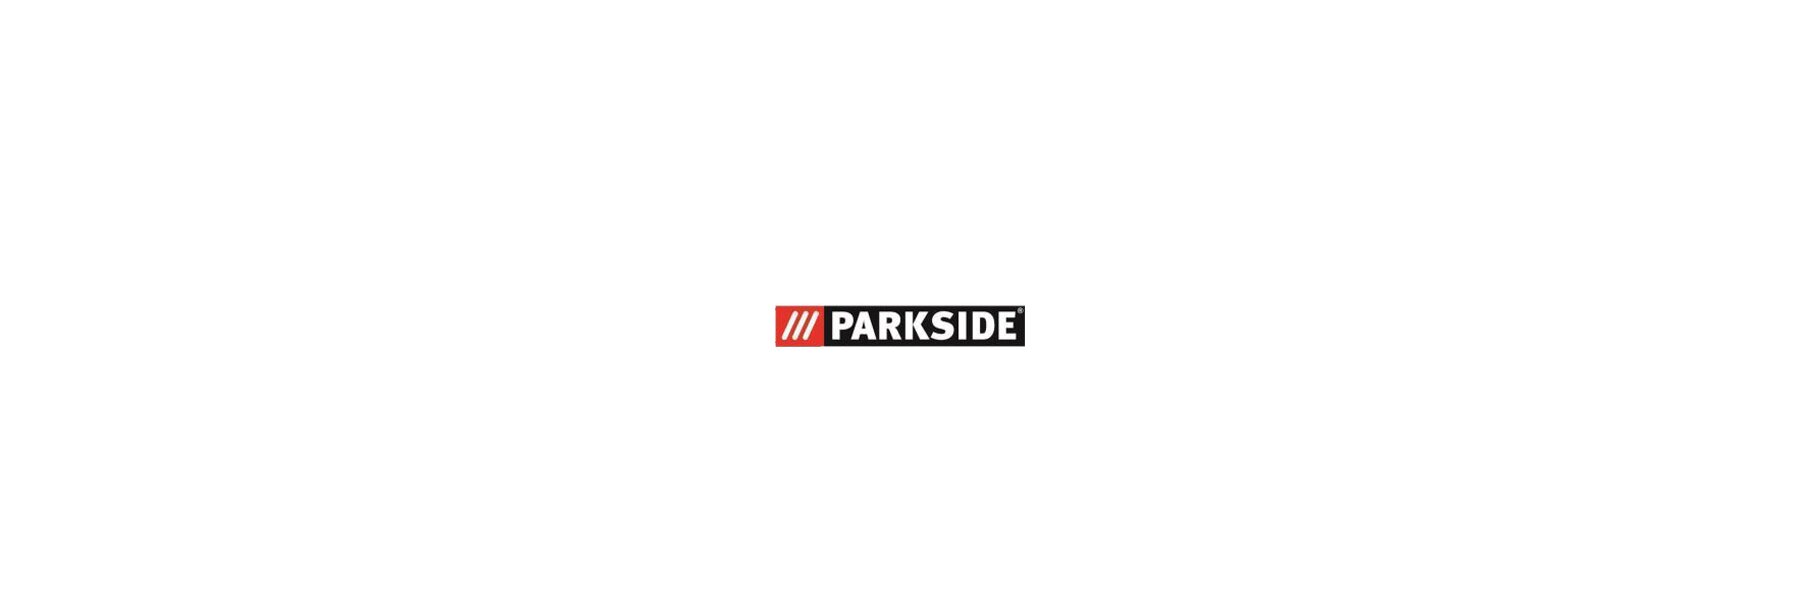 55/5 Pro PHS Parkside DE